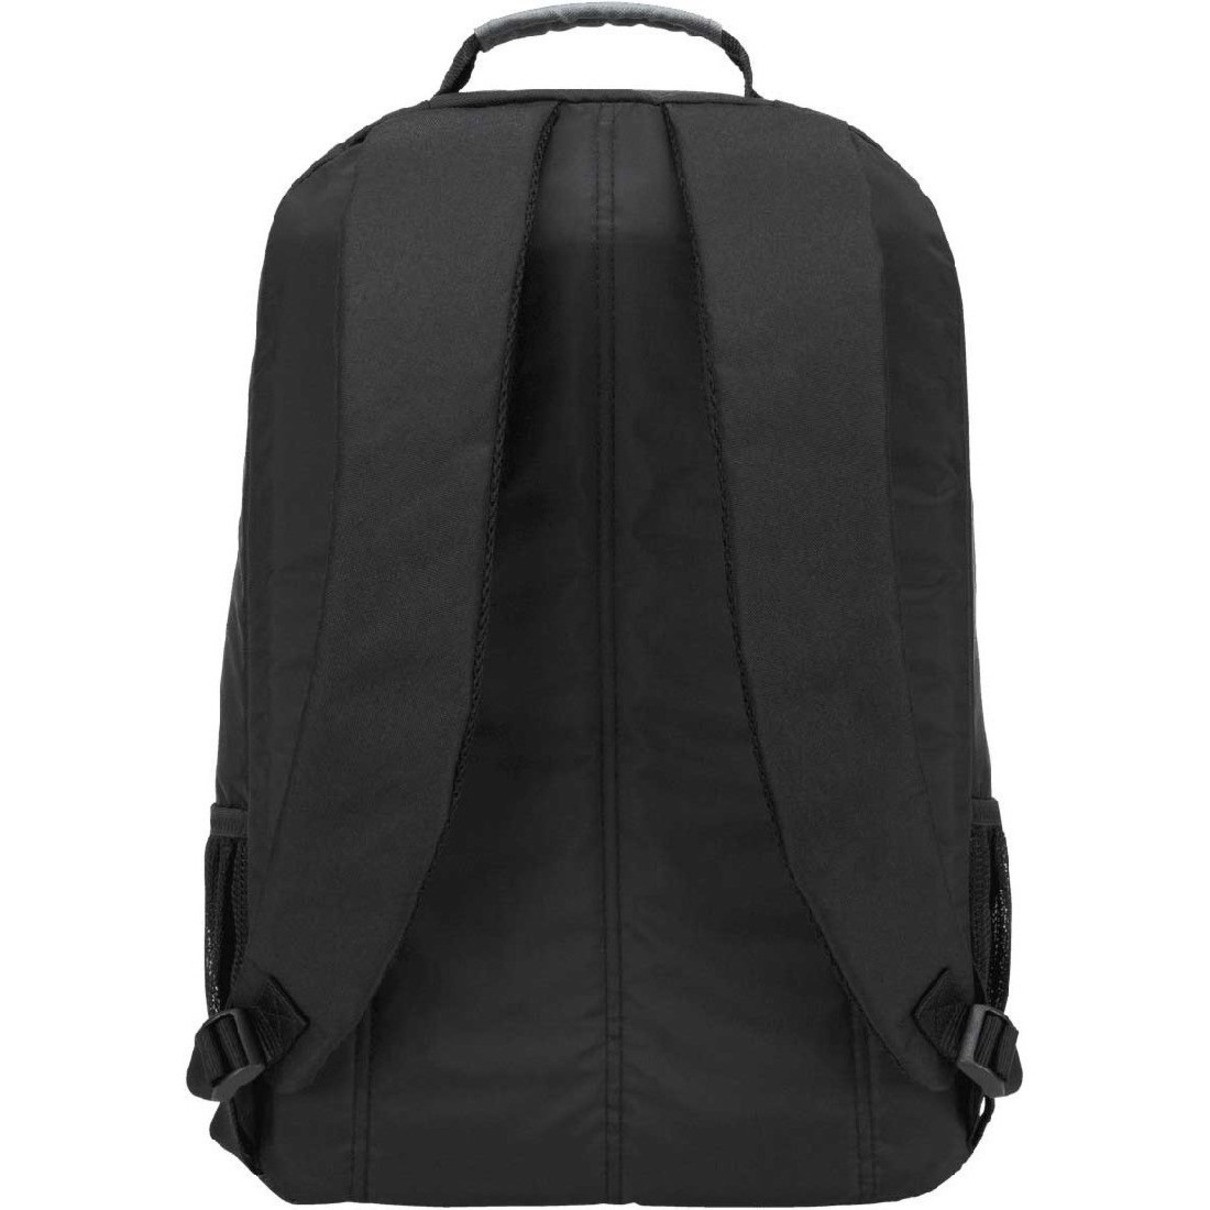 Targus Groove CVR617 Carrying Case (Backpack) for 17" NotebookBlackShock Absorbing840D Nylon BodyFoam MaterialShoulder St... CVR617 - Corporate Armor